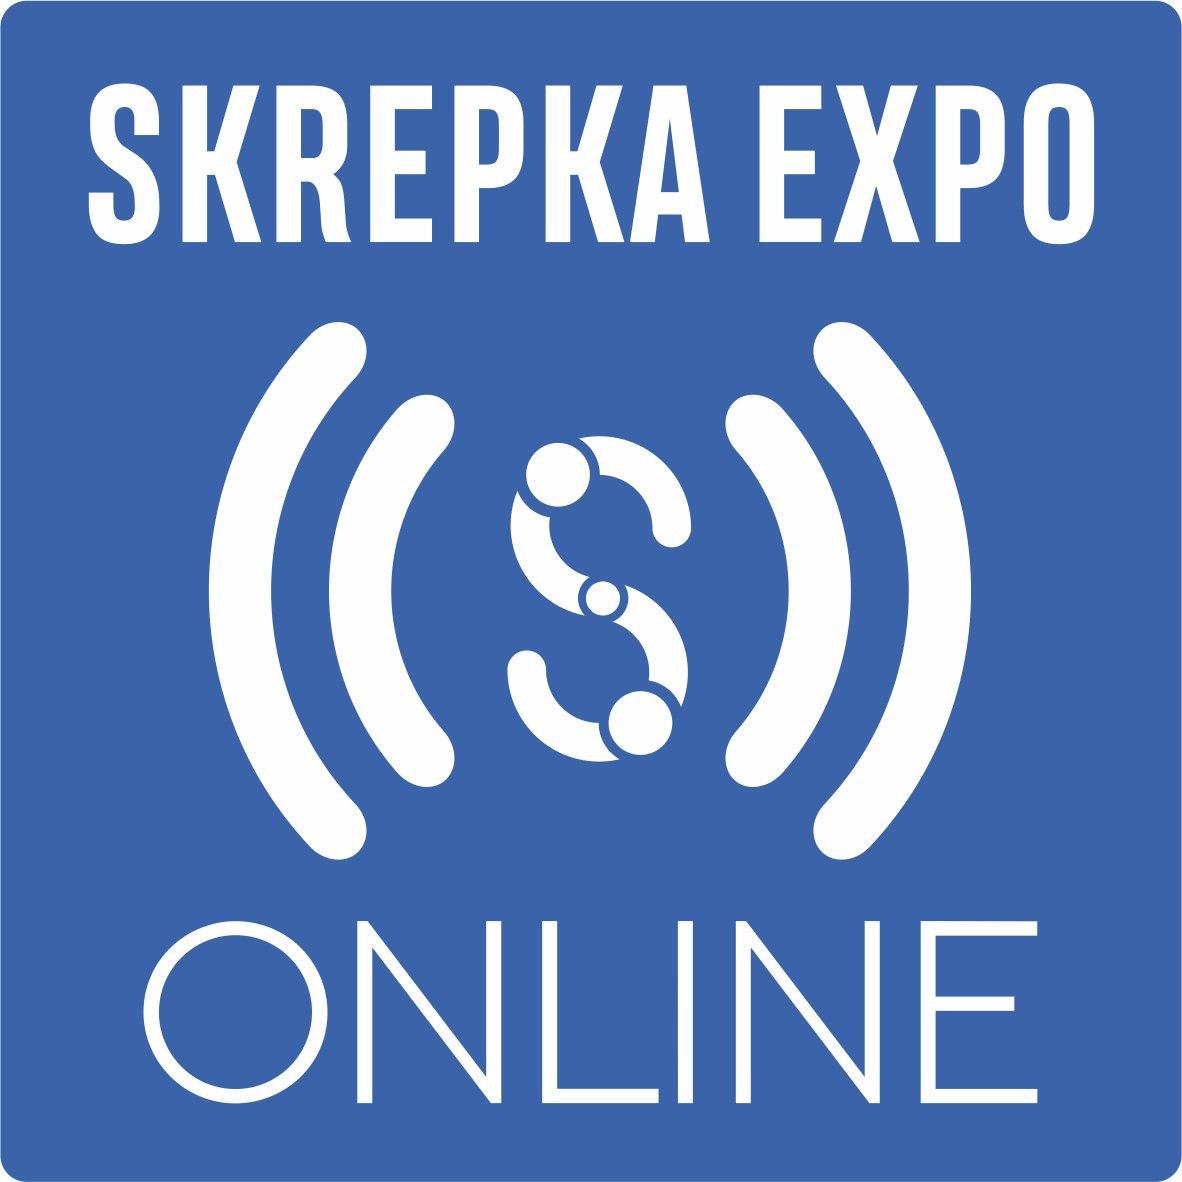  SKREPKA EXPO ONLINE    .